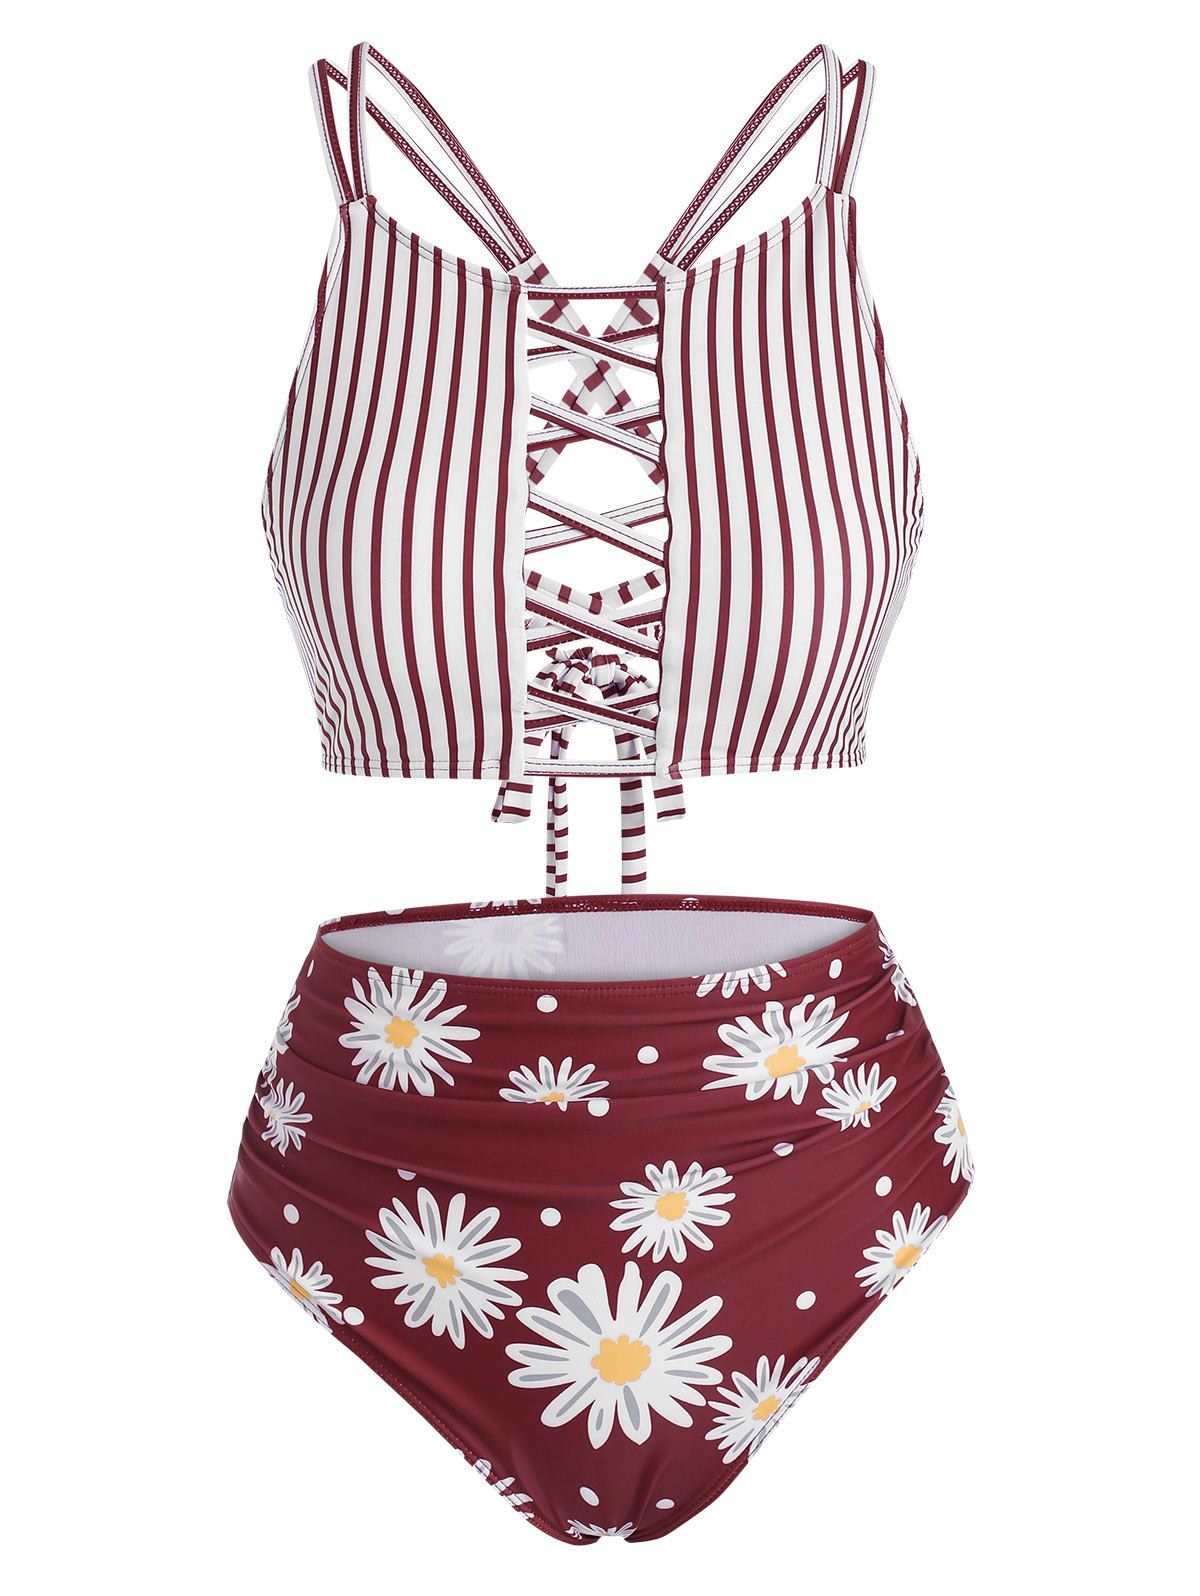 Lattice Criss Cross Stripes Daisy Print Tankini Swimwear - DEEP RED S